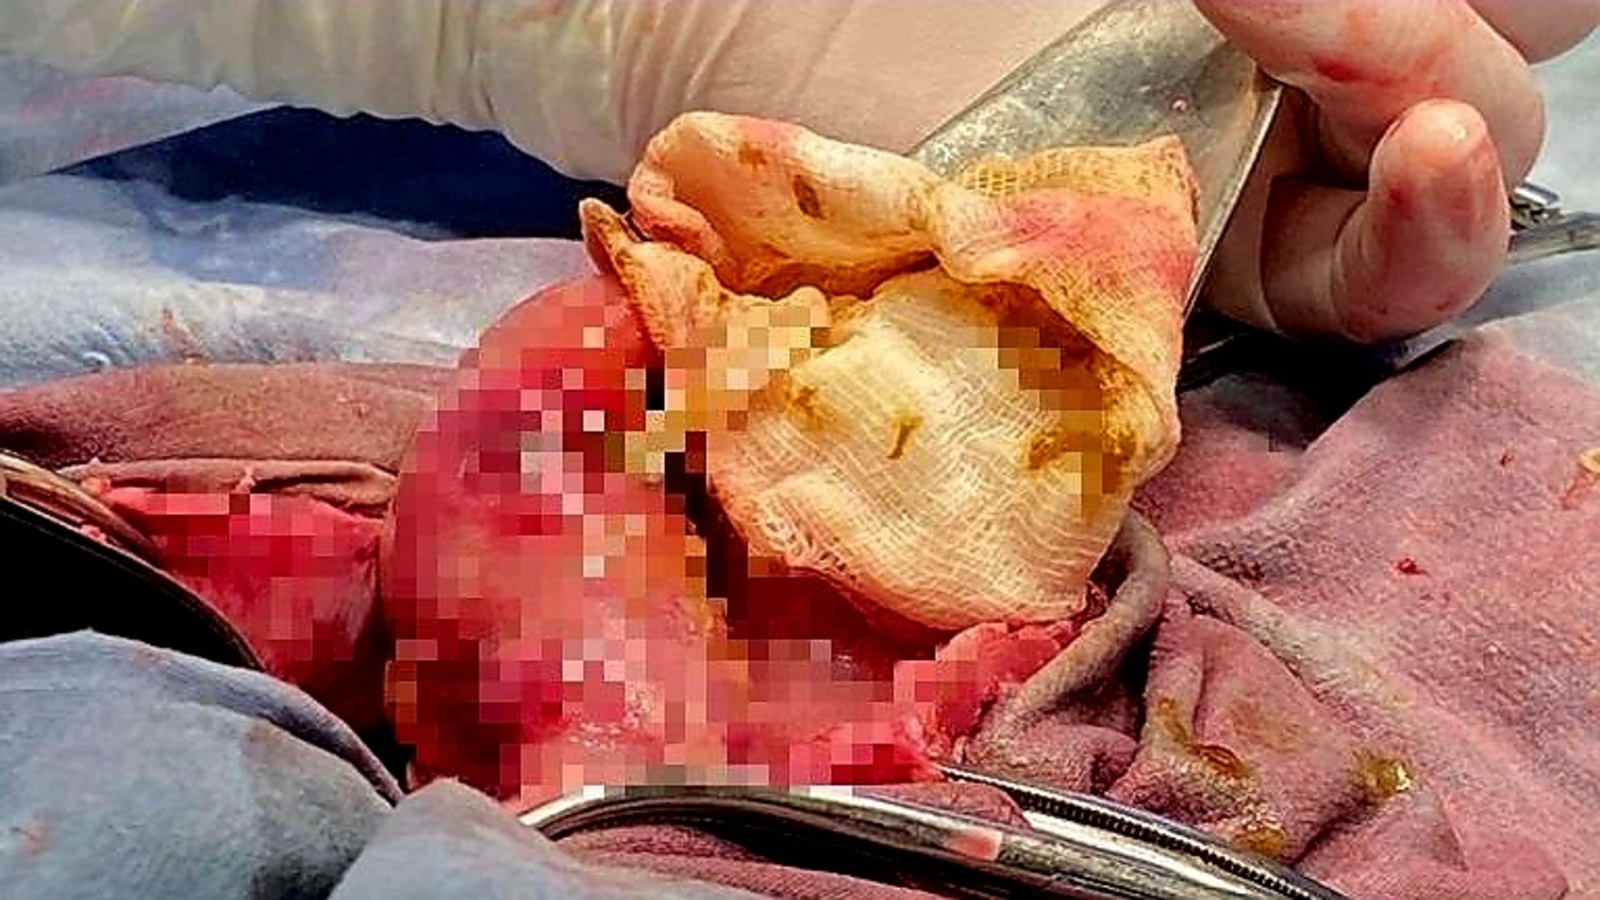 В кишечнике жителя Башкирии врачи обнаружили огромного червя